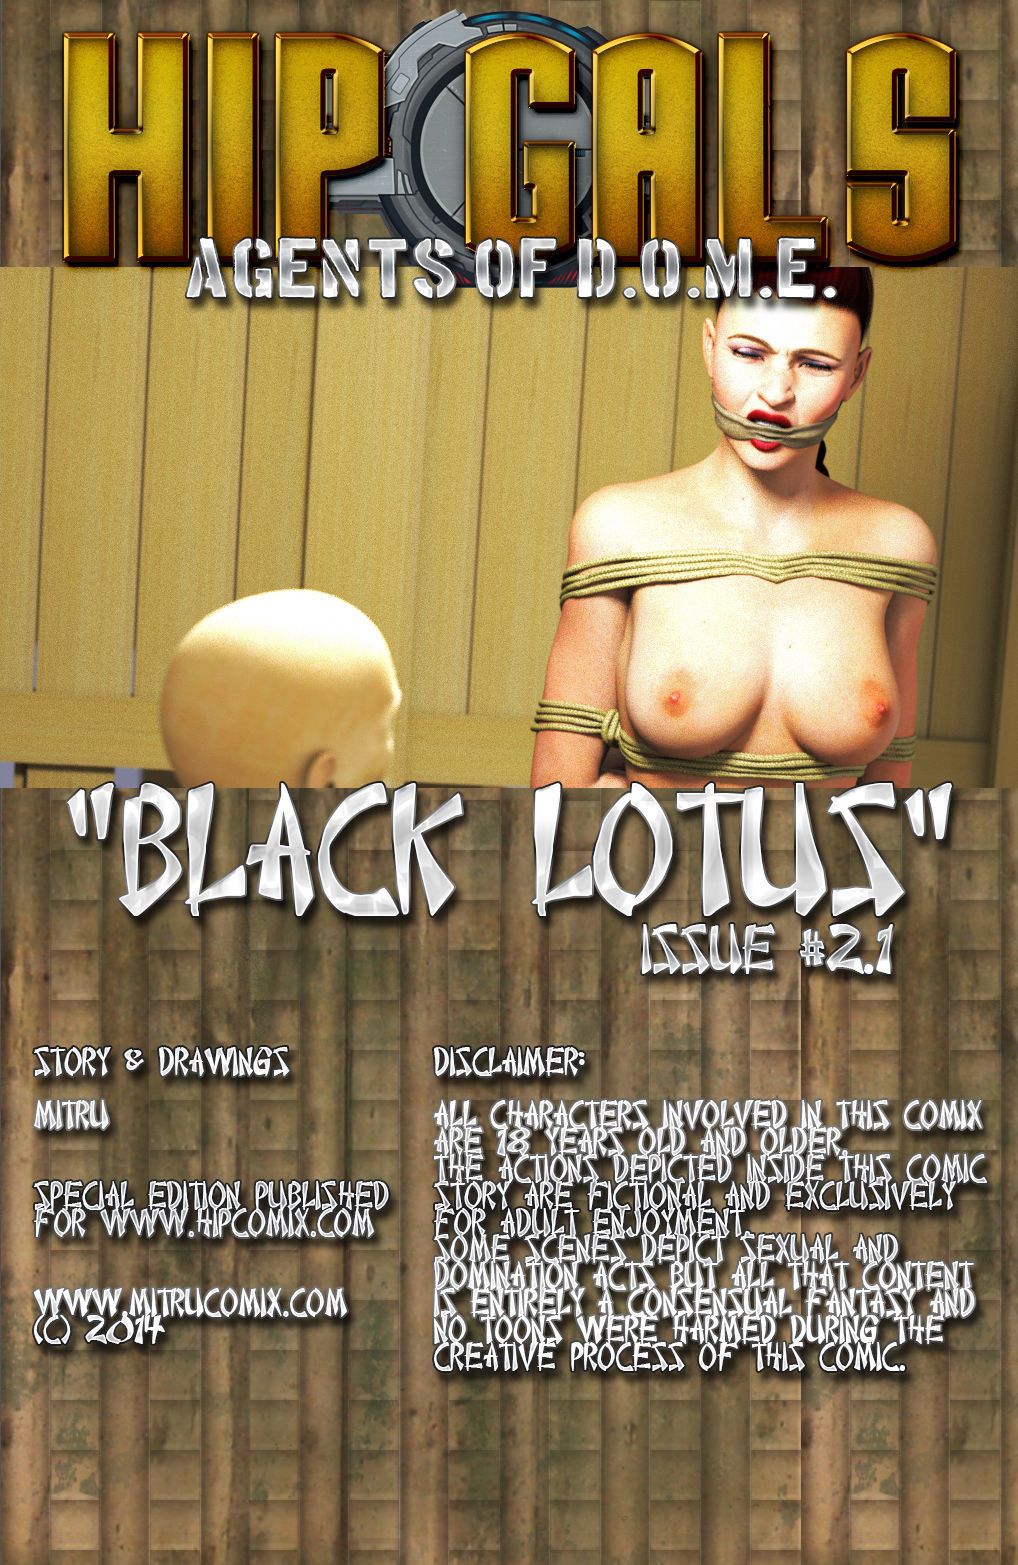 noir Lotus 1-6 - PARTIE 2